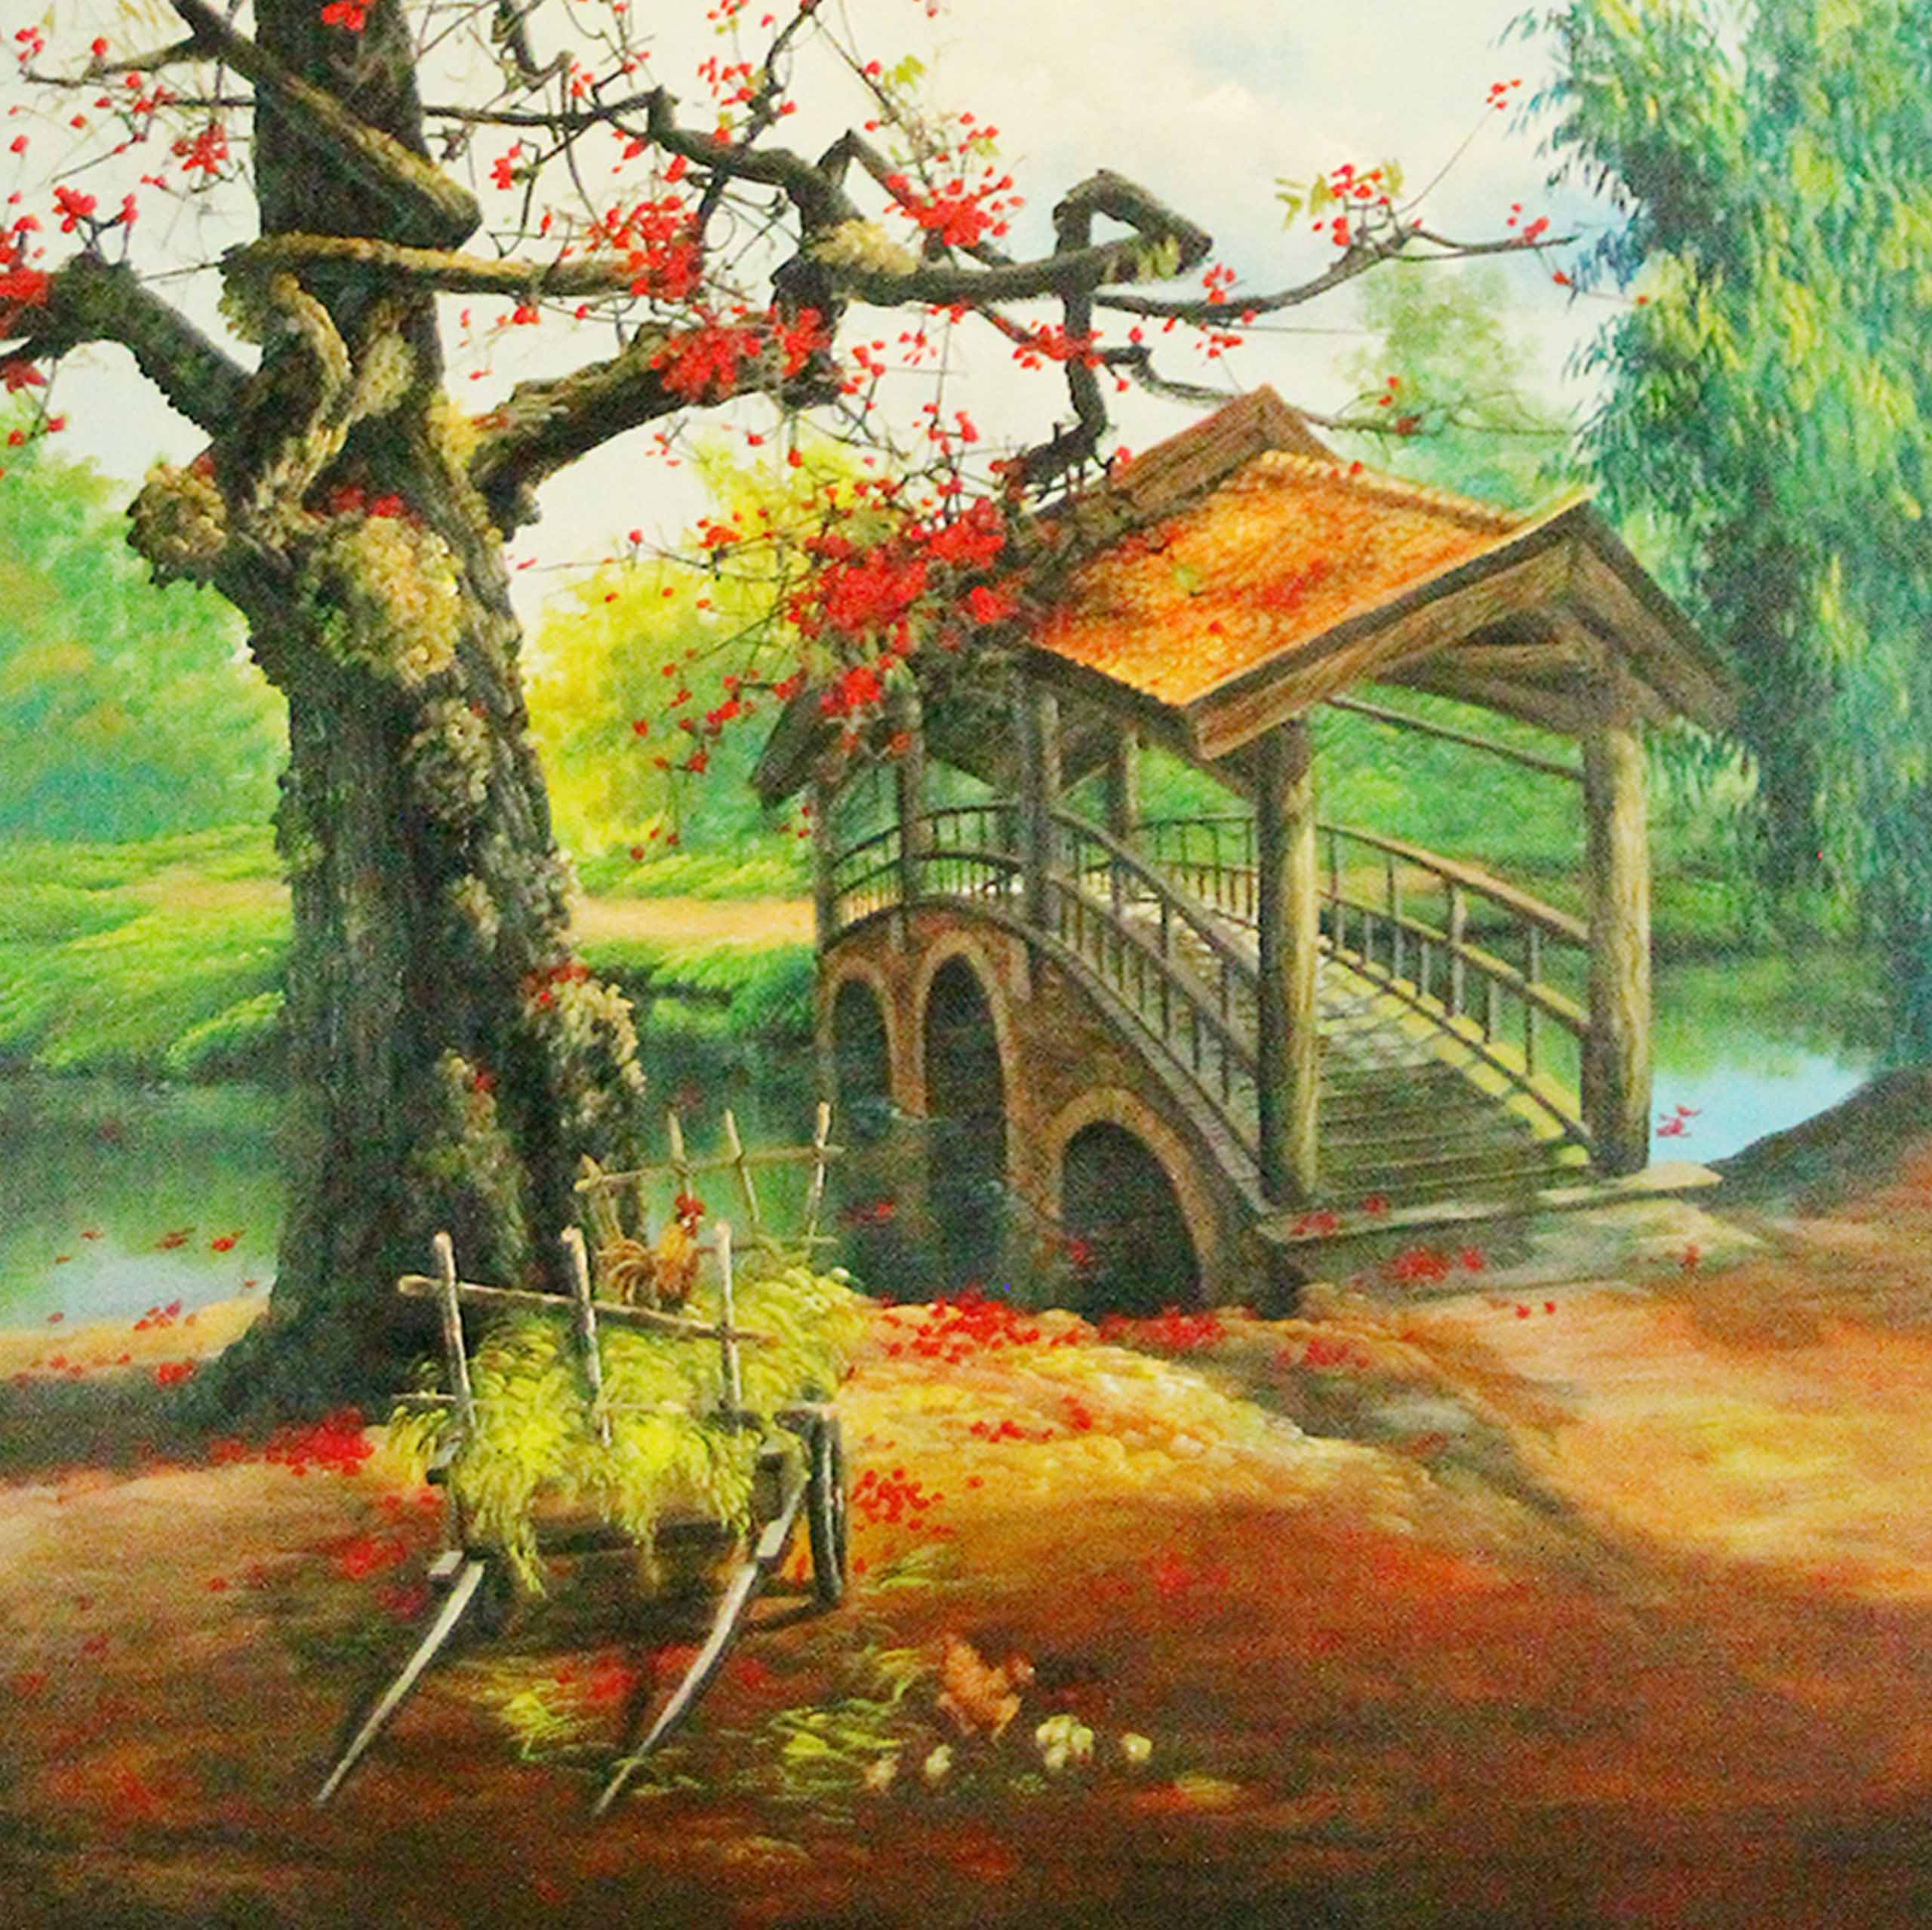 Tranh sơn dầu phong cảnh làng quê tác phẩm Nét Xưa - TSD45LHAR - LEHAIS ART